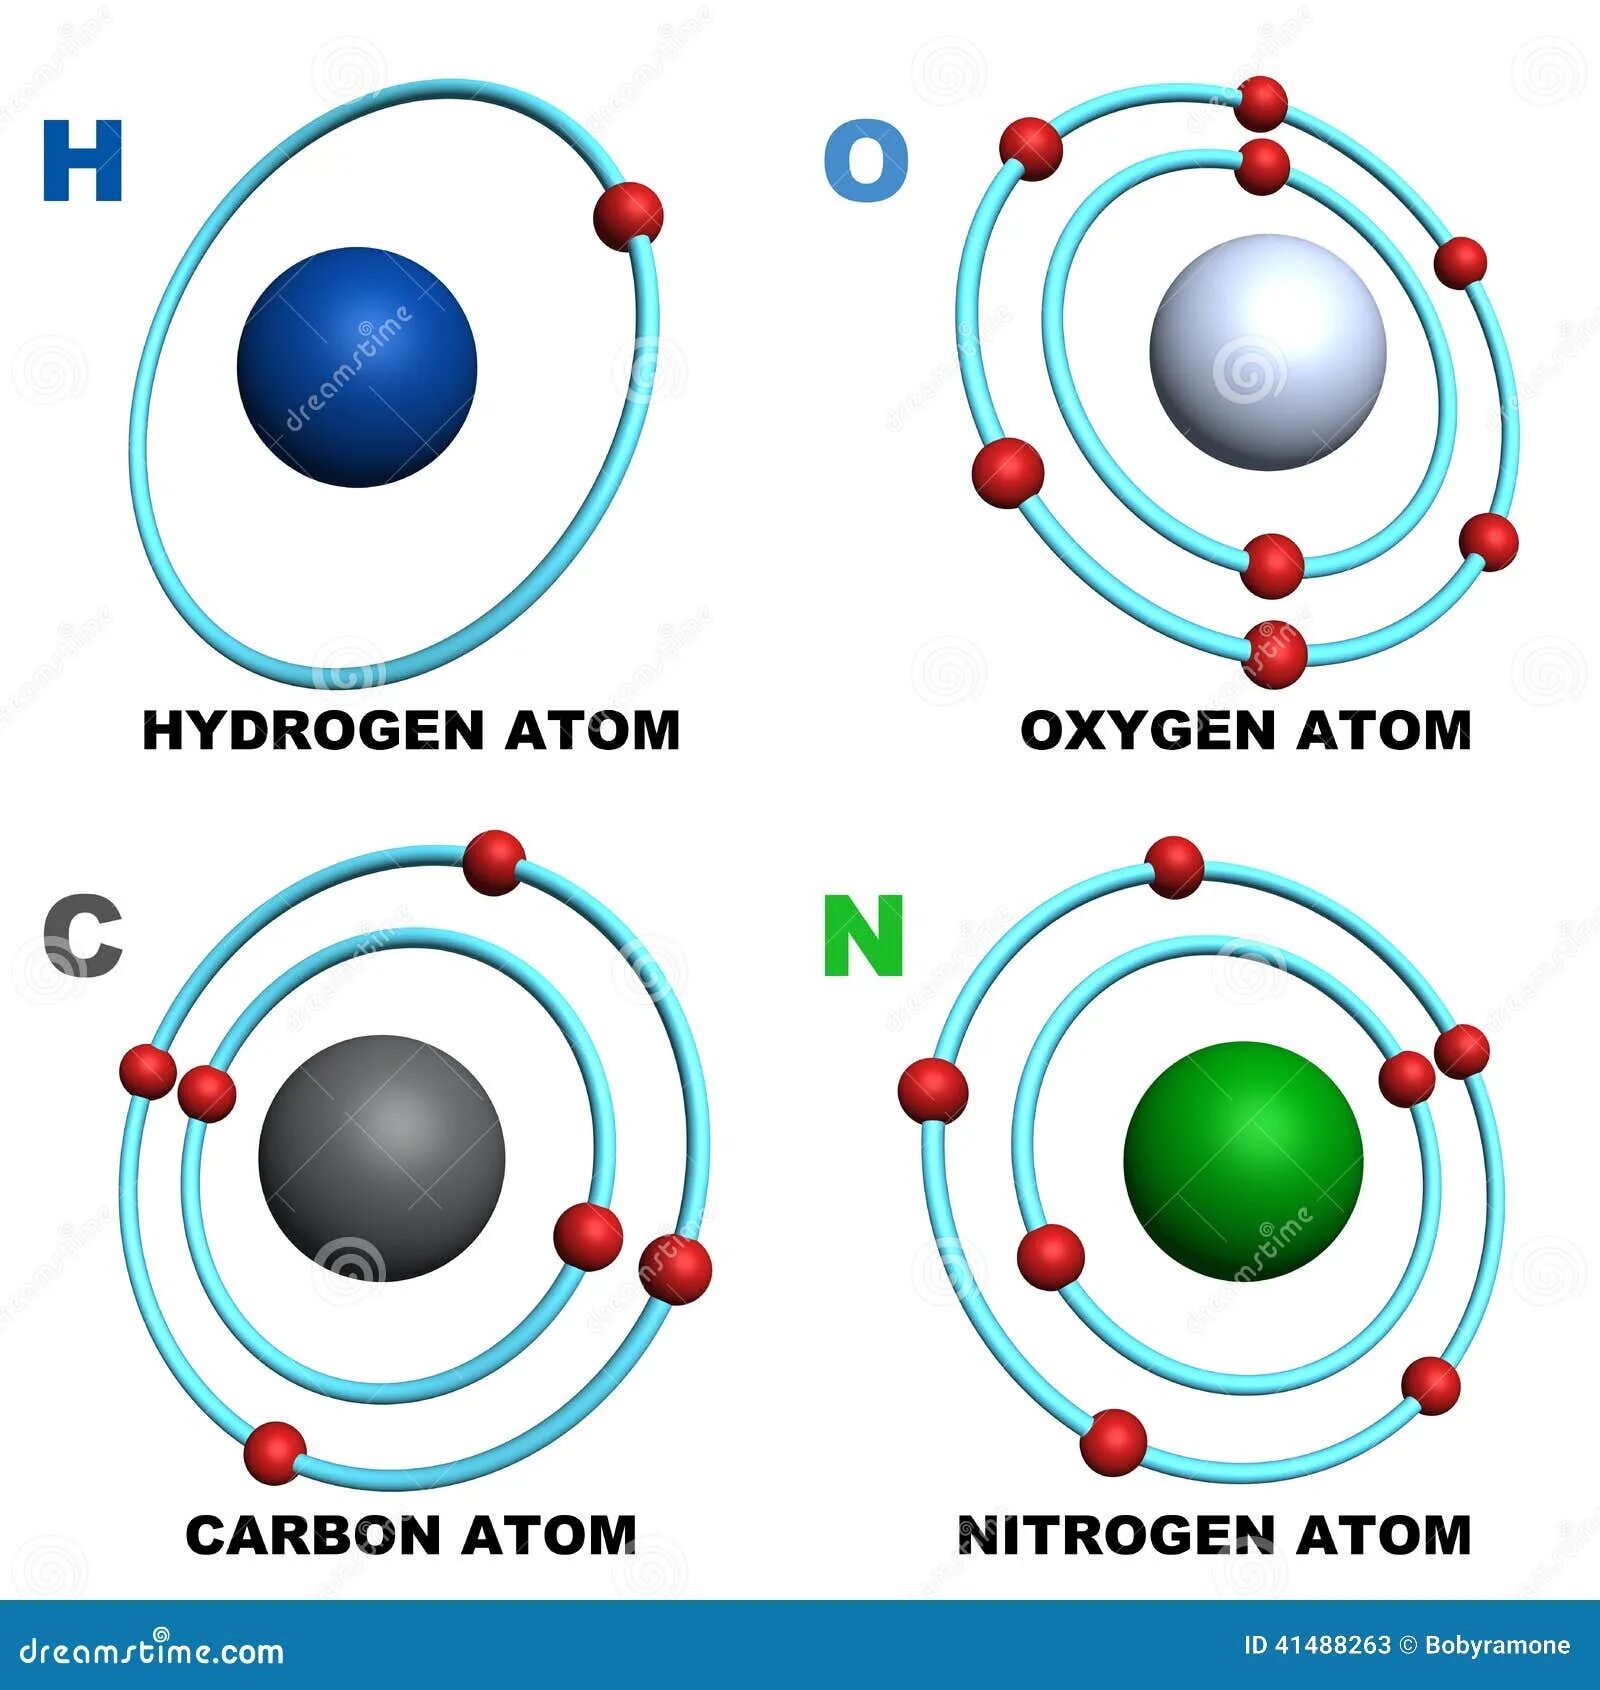 Содержат углерод кислород водород. Атом водорода атом углерода атом азота атом кислорода. Углерод водород кислород и азот. Азот кислород углевод водород. Модель атома кислорода.